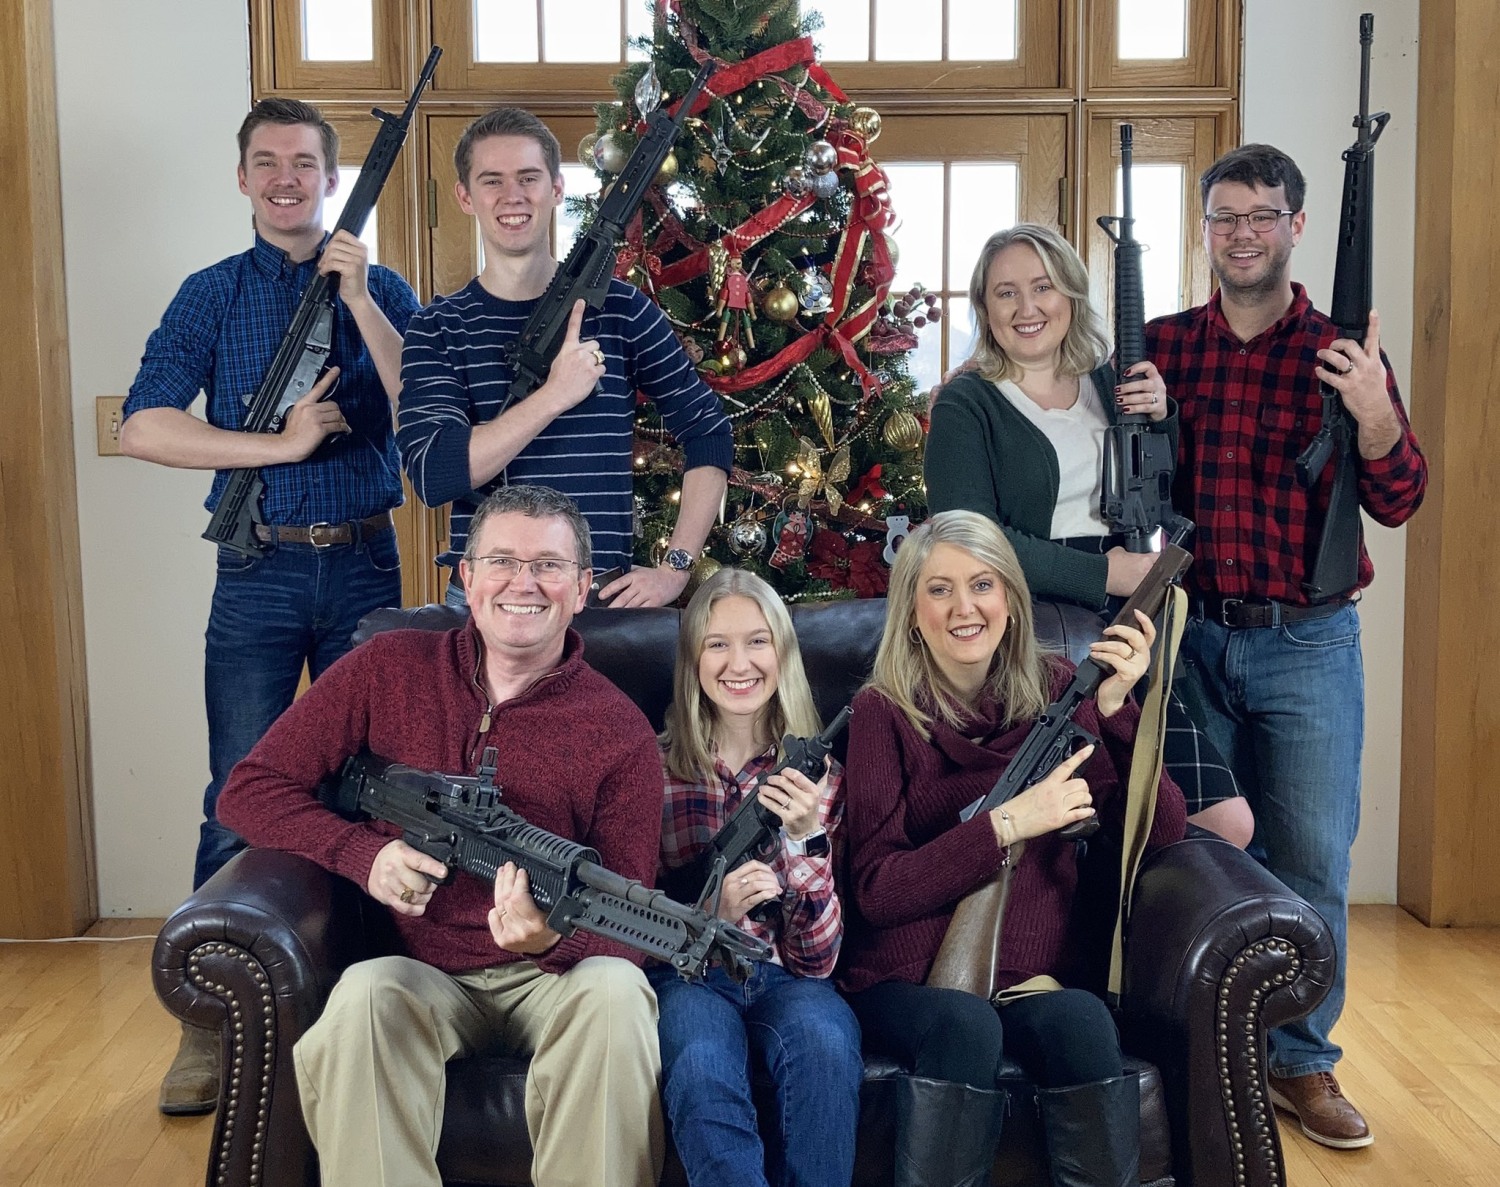 A Christmas card with guns? Lauren Boebert and Thomas Massie start a new  culture war.